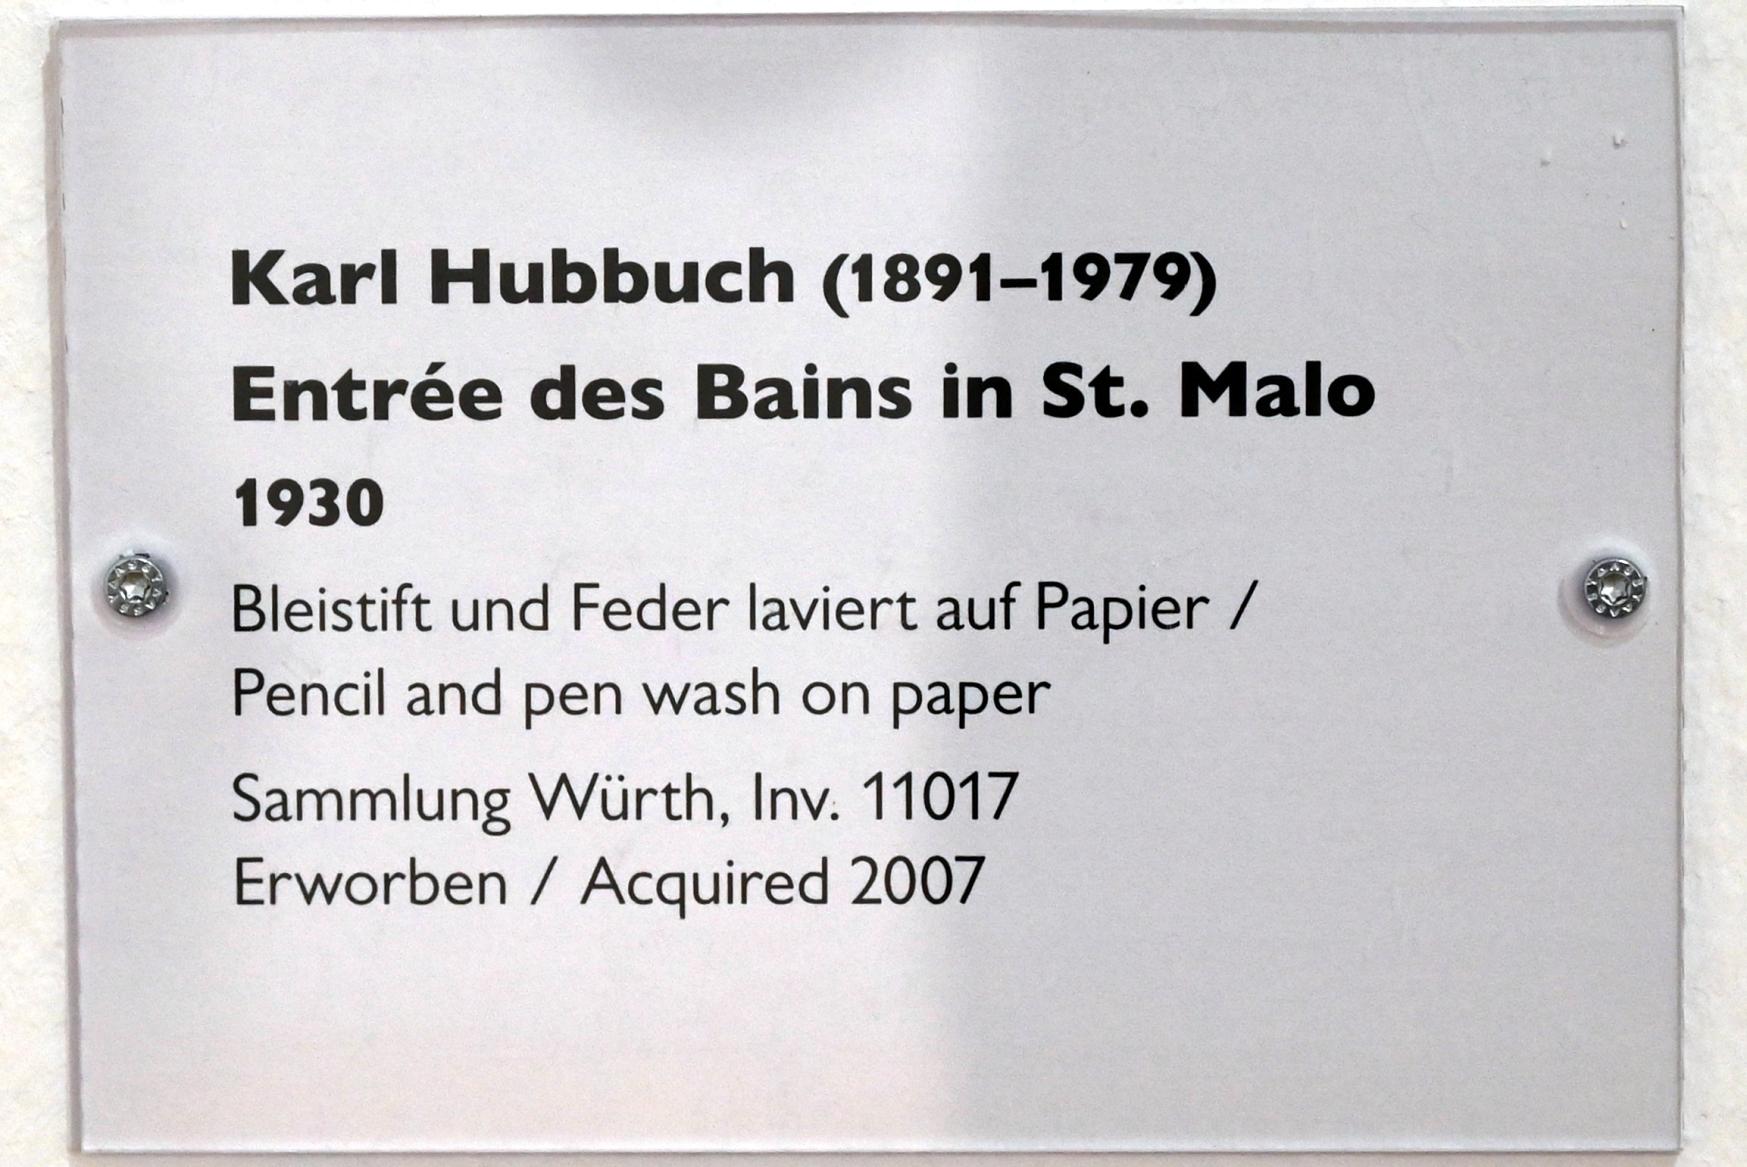 Karl Hubbuch (1929–1959), Entrée des Bains in St. Malo, Schwäbisch Hall, Kunsthalle Würth, Ausstellung "Sport, Spaß und Spiel" vom 13.12.2021 - 26.02.2023, Obergeschoß, 1930, Bild 2/2